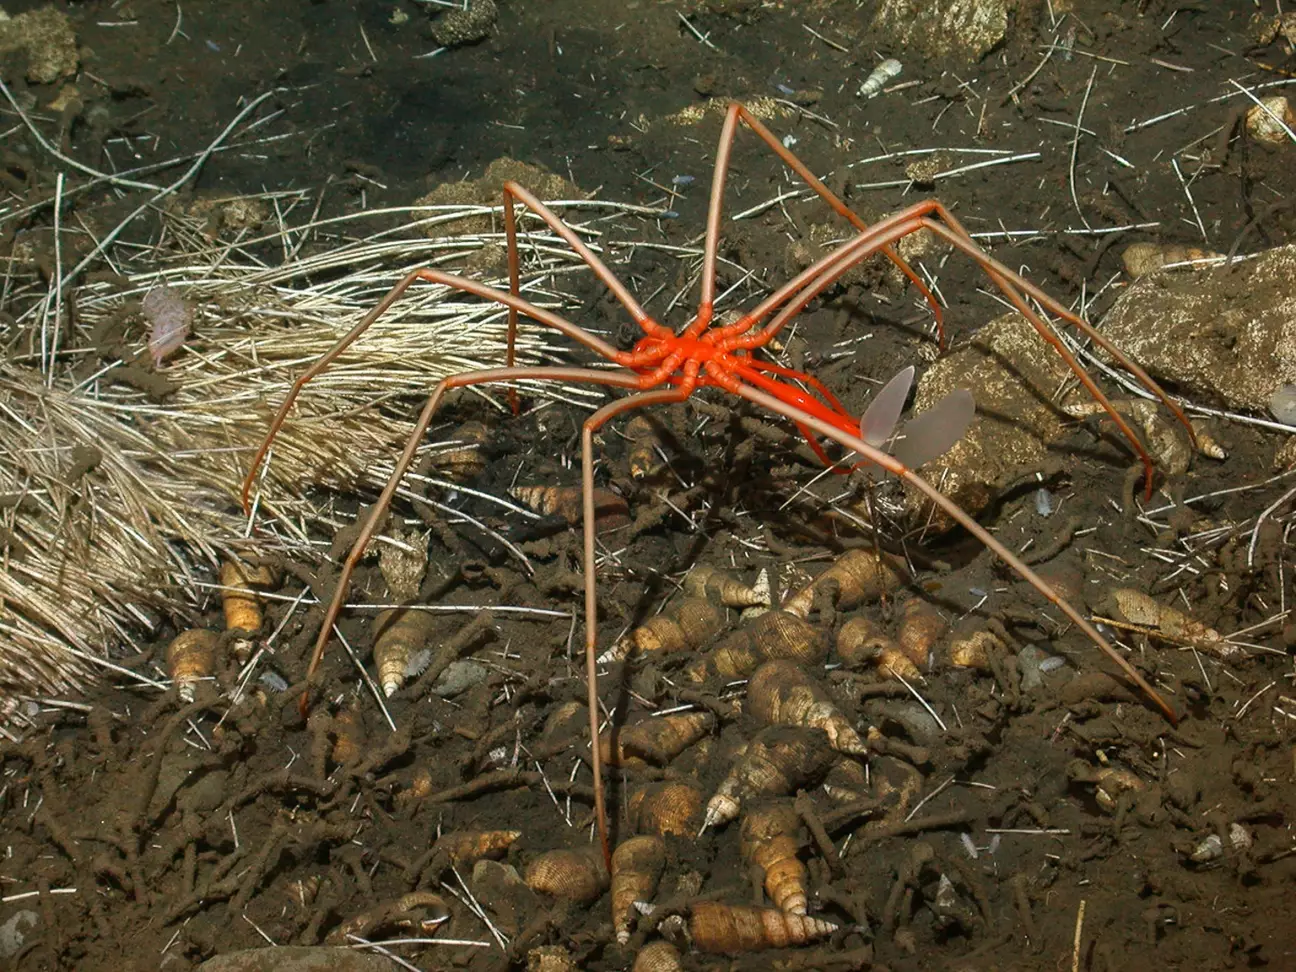 Mistério por trás das aranhas marinhas gigantes finalmente descoberto após 140 anos